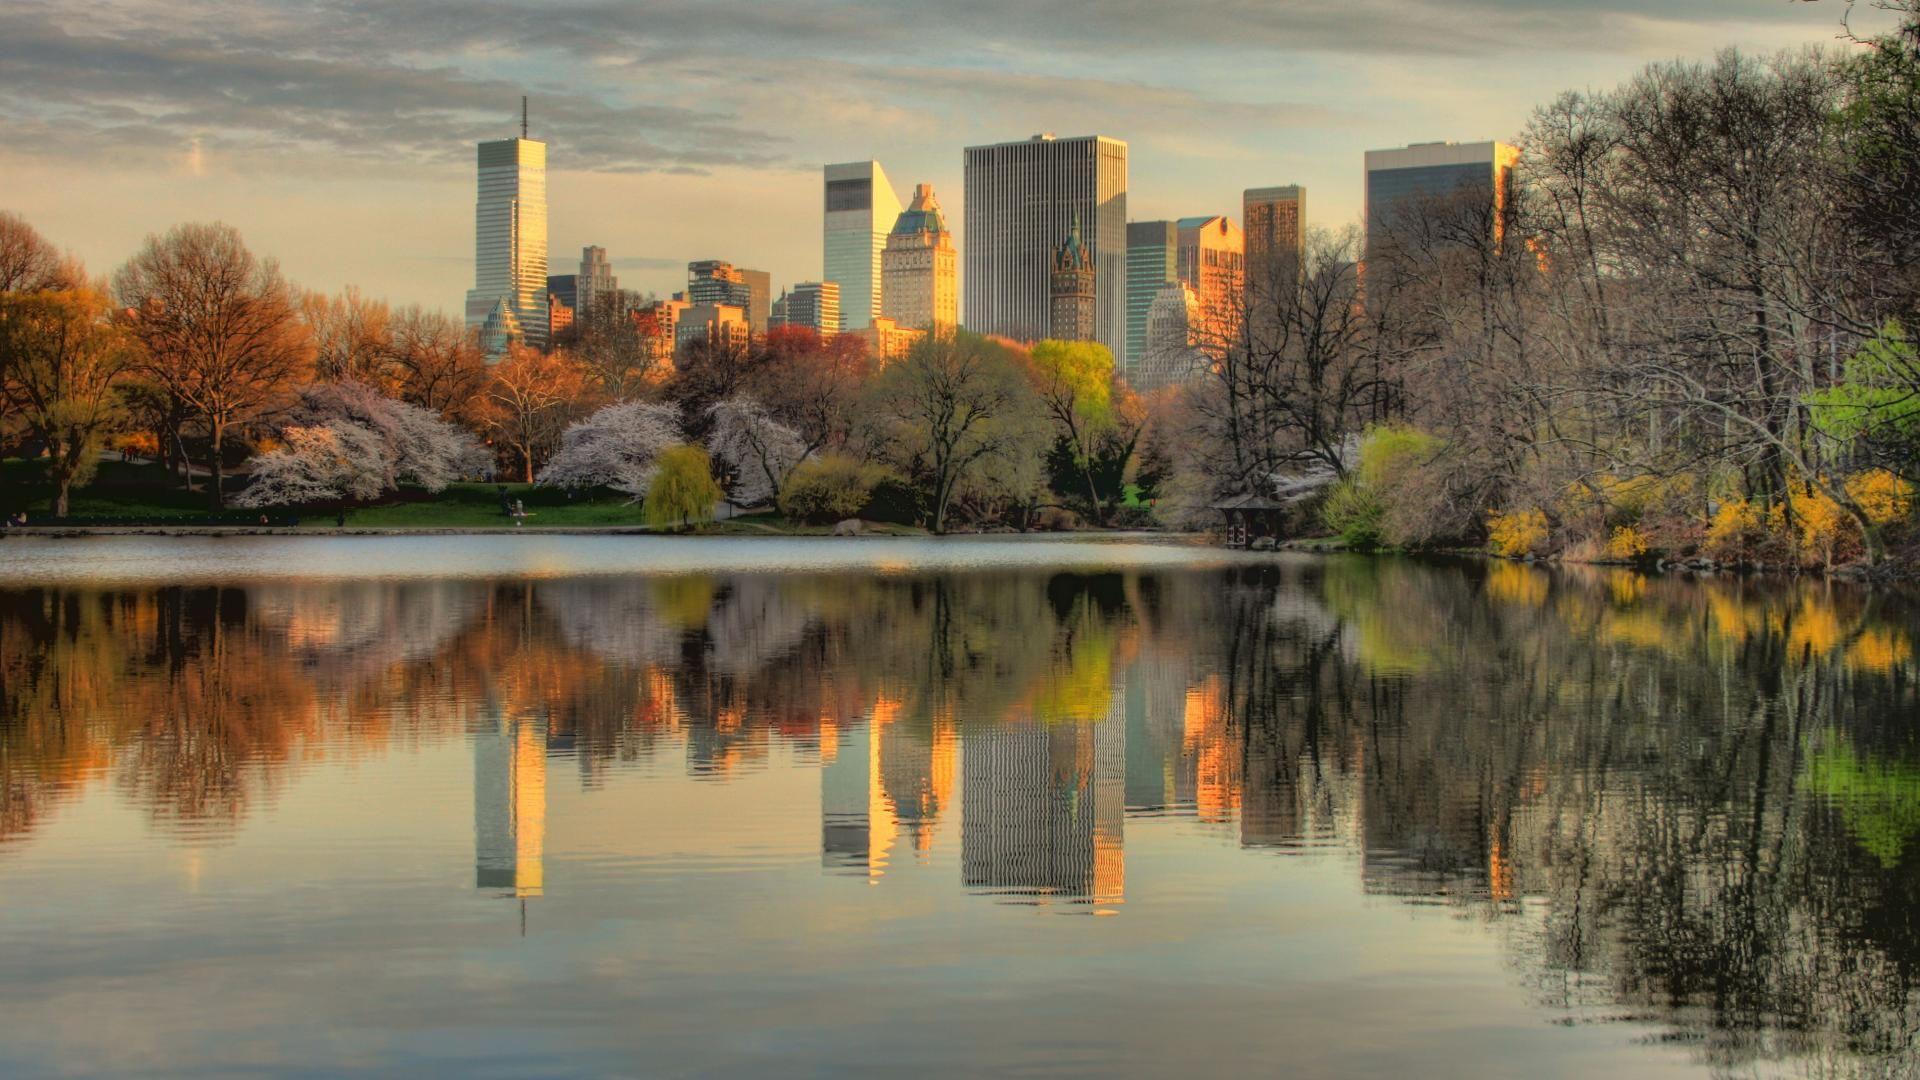 Центральный парк Нью-Йорк. Осень в Нью-Йорке Центральный парк. Центральный парк Нью-Йорка фото. Манхэттен централ парк. Картинки природы города